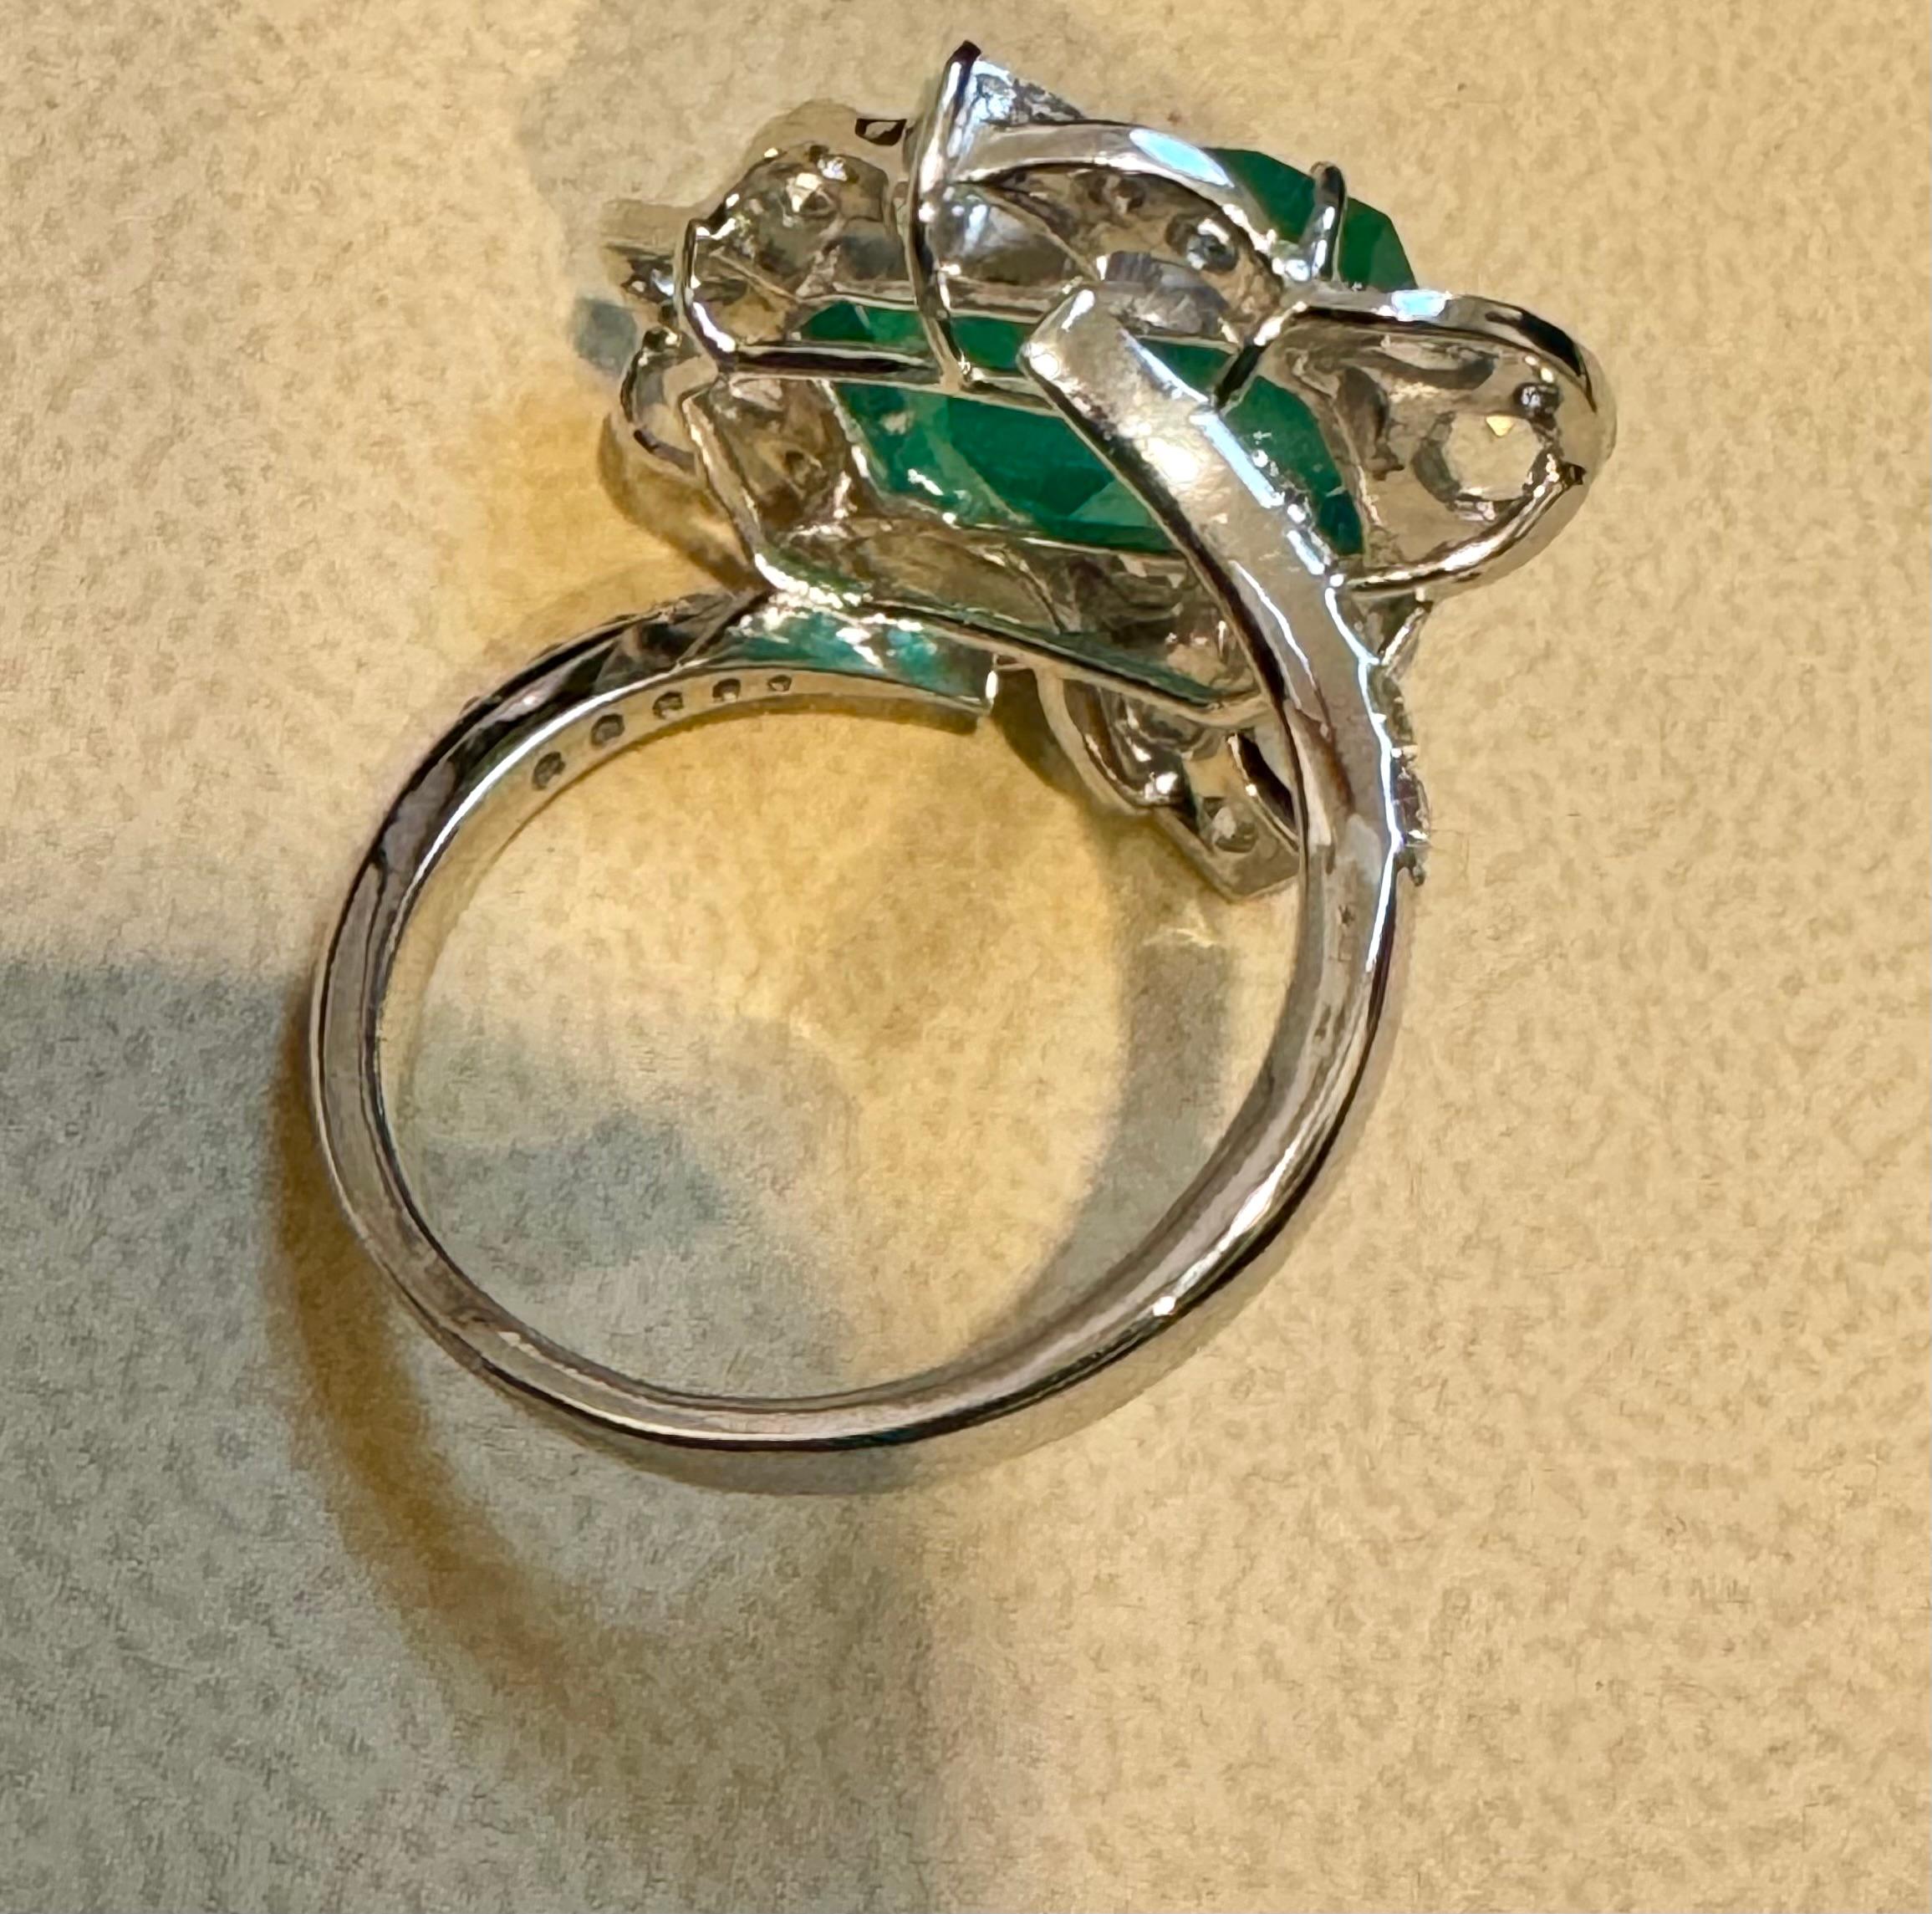 7 Karat feinster sambischer Smaragdschliff Smaragd & 1,5 Karat Diamantring, 18 Kt Gold Größe 9
 Dieser klassische Ring ist mit einem sambischen Smaragd im Smaragdschliff aus Sambia versehen, der sich durch eine sehr gute Qualität, Farbe und Glanz